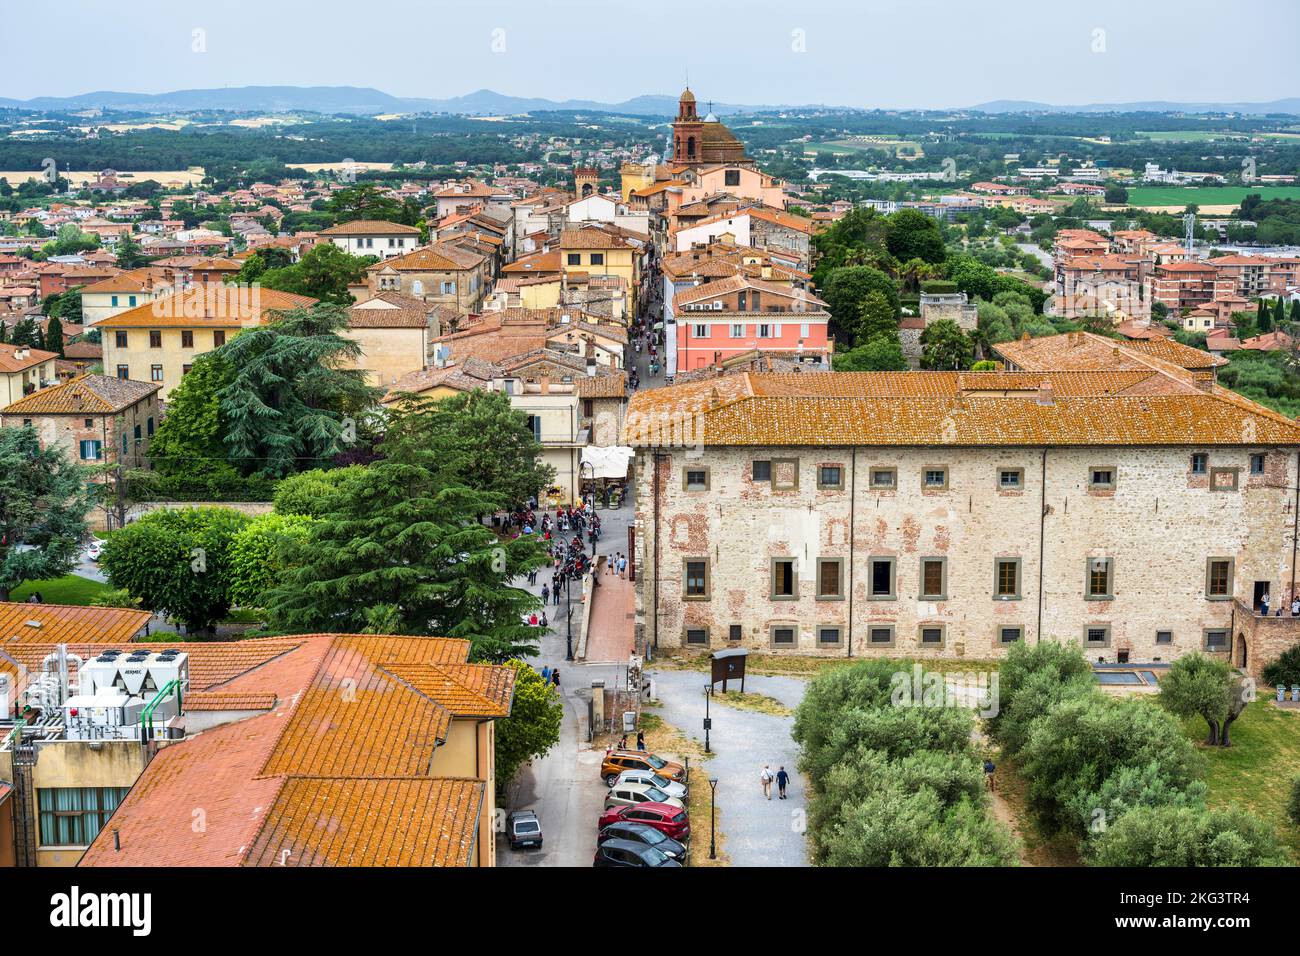 Aerial view of Palazzo della Corgna and main street in historic old town of Castiglione del Lago, Province of Perugia, Umbria, Italy Stock Photo